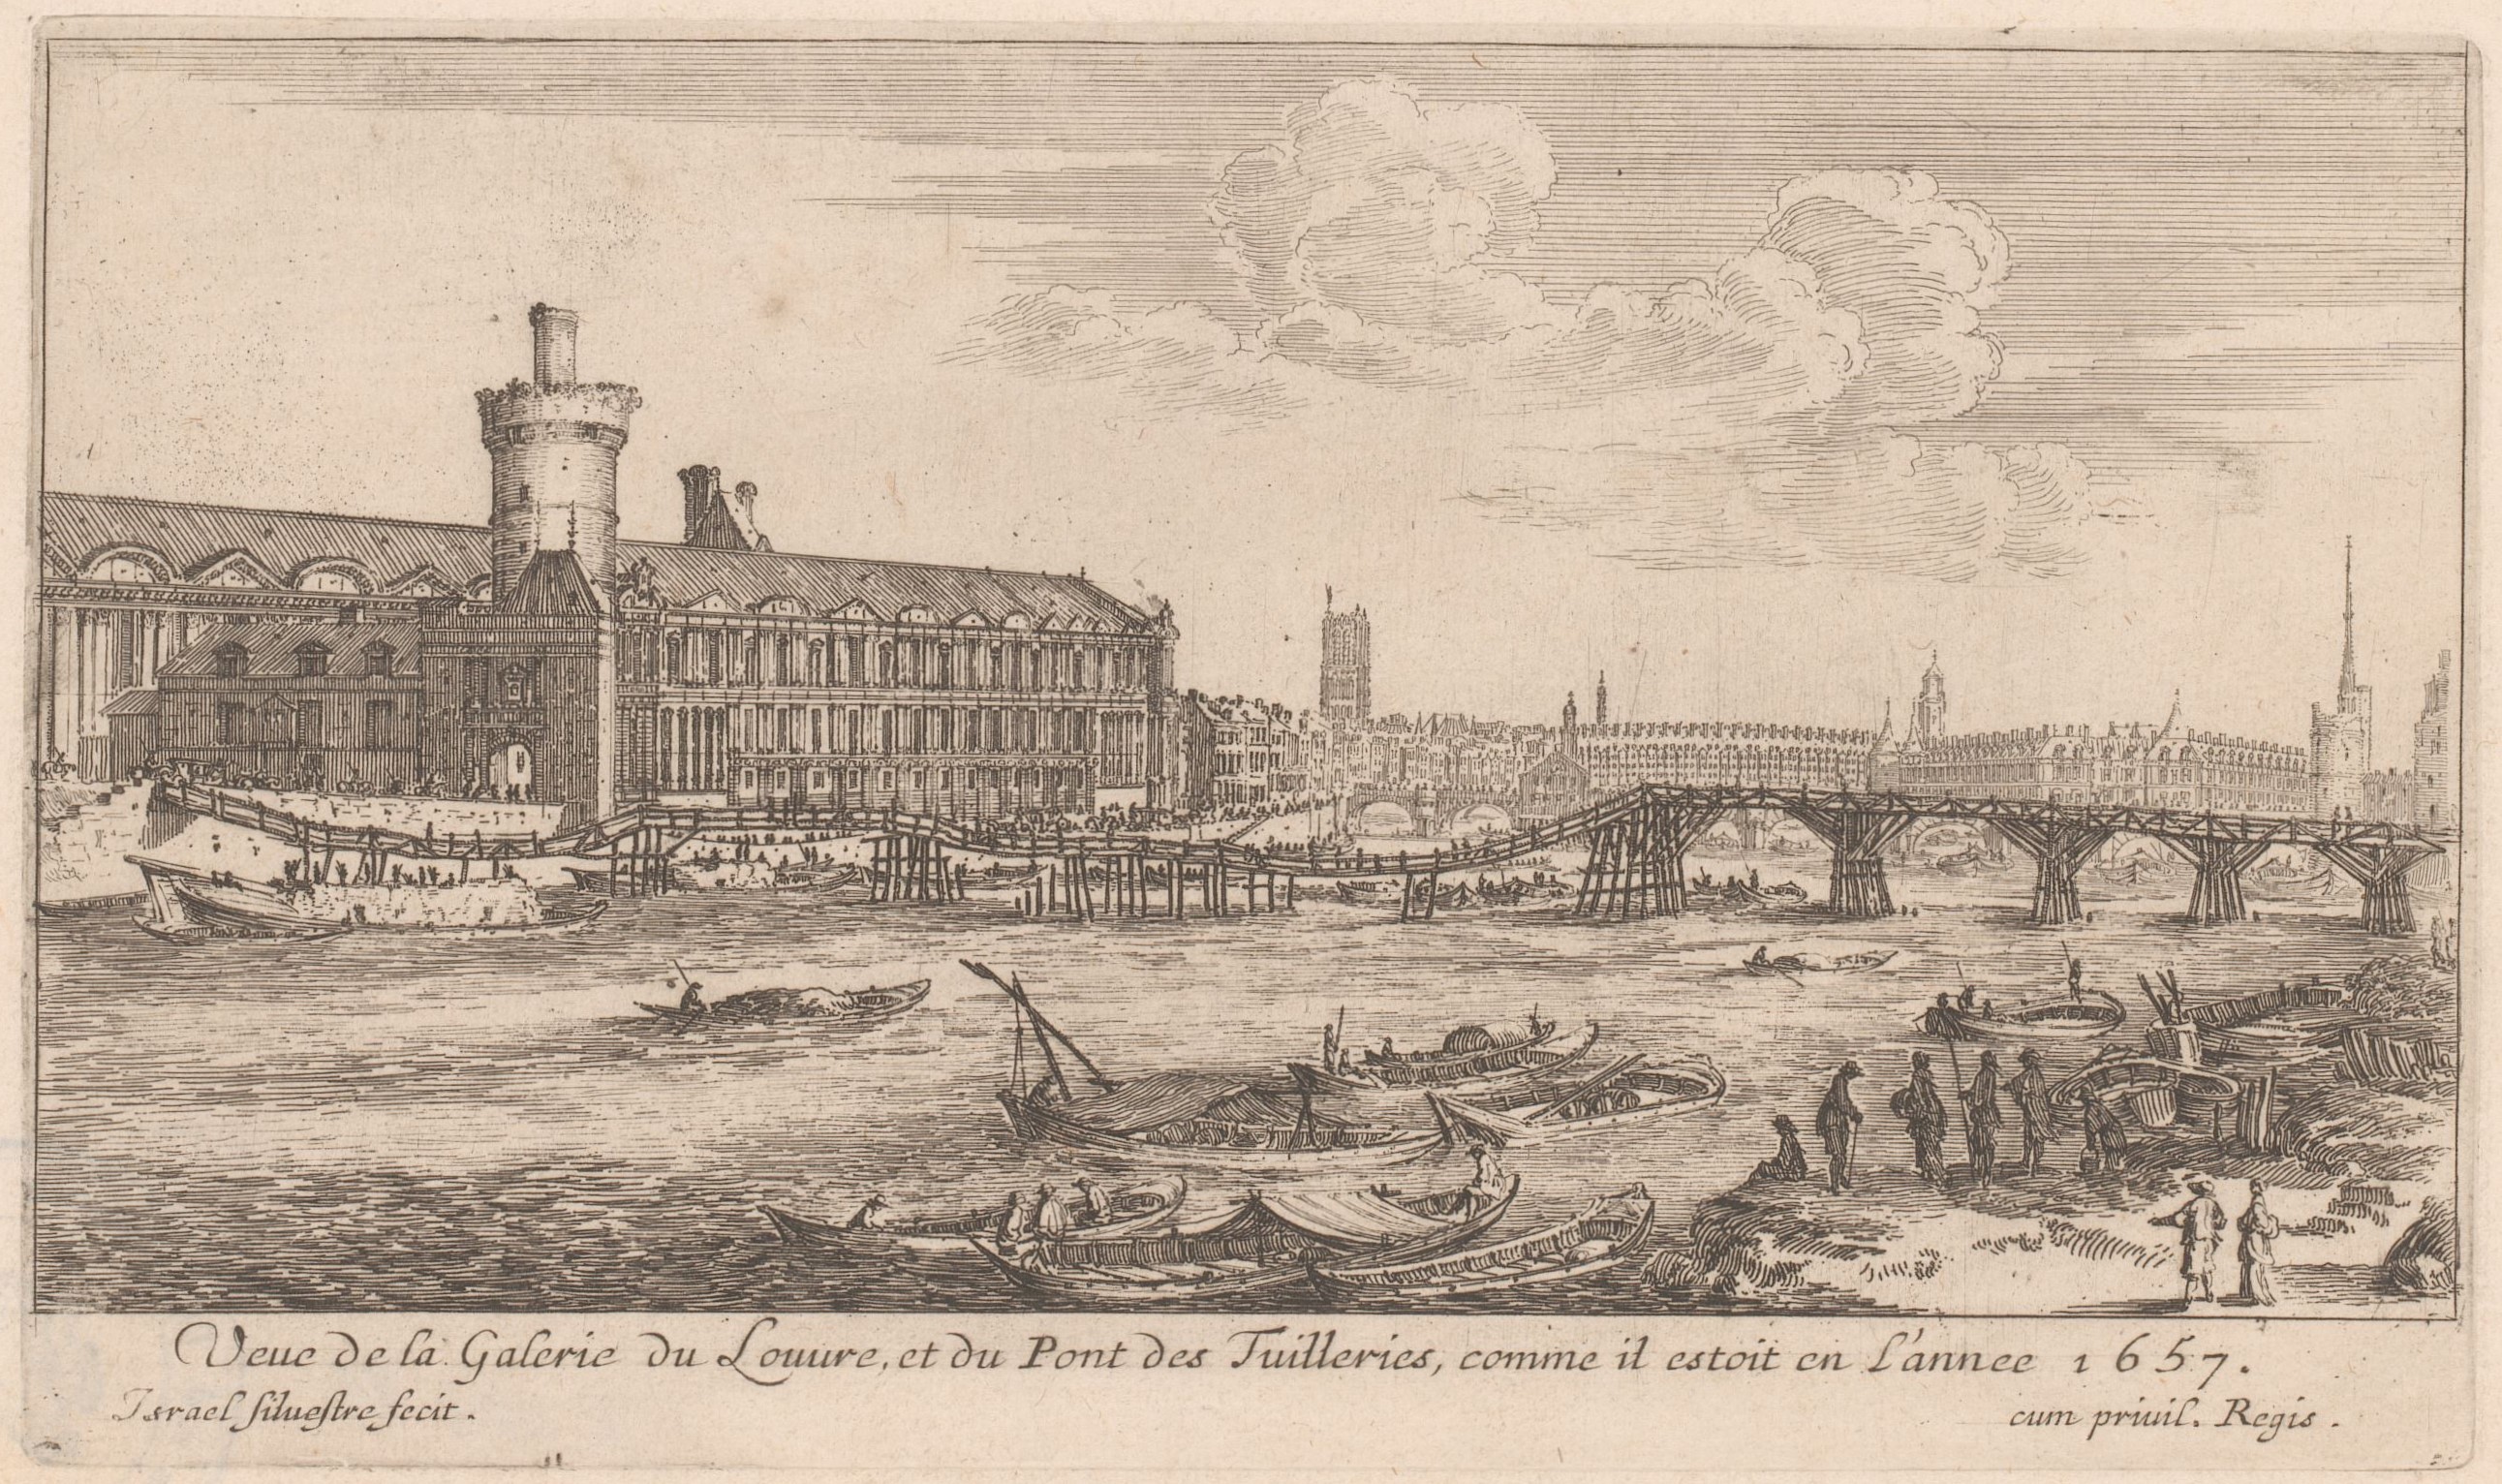 Israël Silvestre : Veue de la Galerie du Louure, et du Pont des Tuilleries, comme il estoit en l'année 1657.